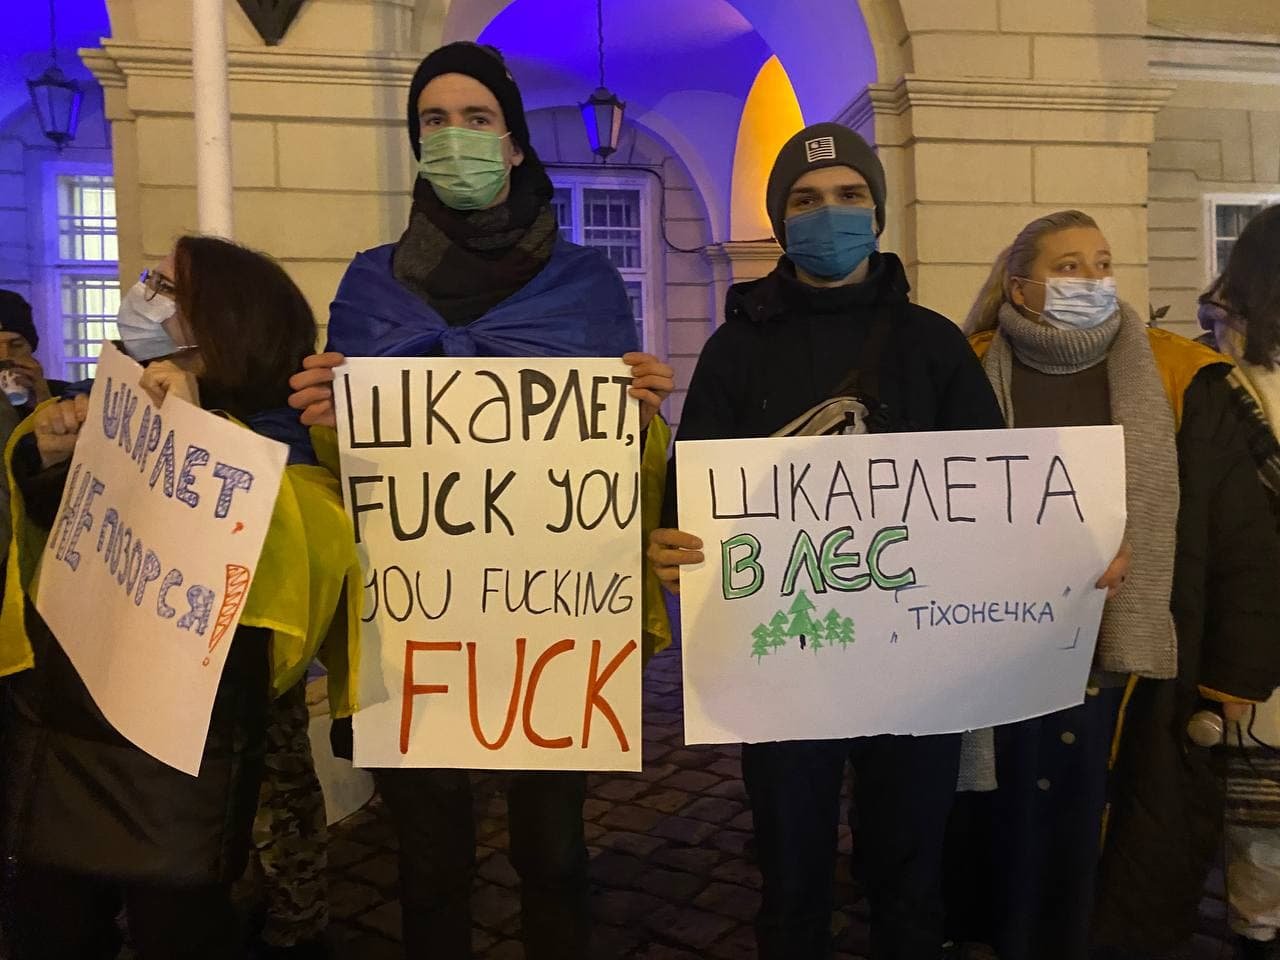 "Міністр тимчасовий, Могилянка - вічна": чому в центрі Львова протестували студенти, - ФОТО, ВІДЕО